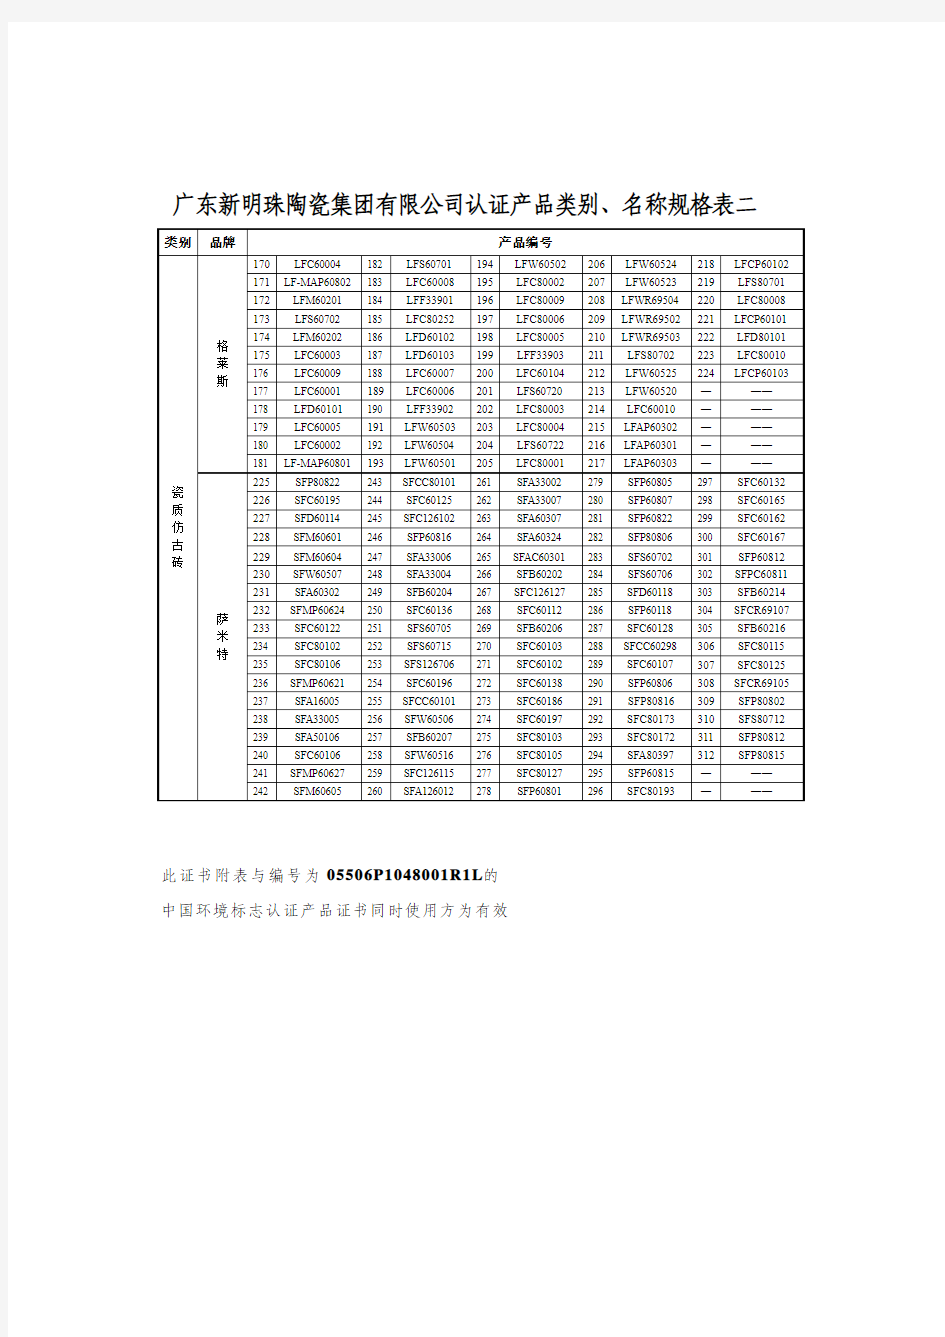 广东新明珠陶瓷集团有限公司认证产品类别